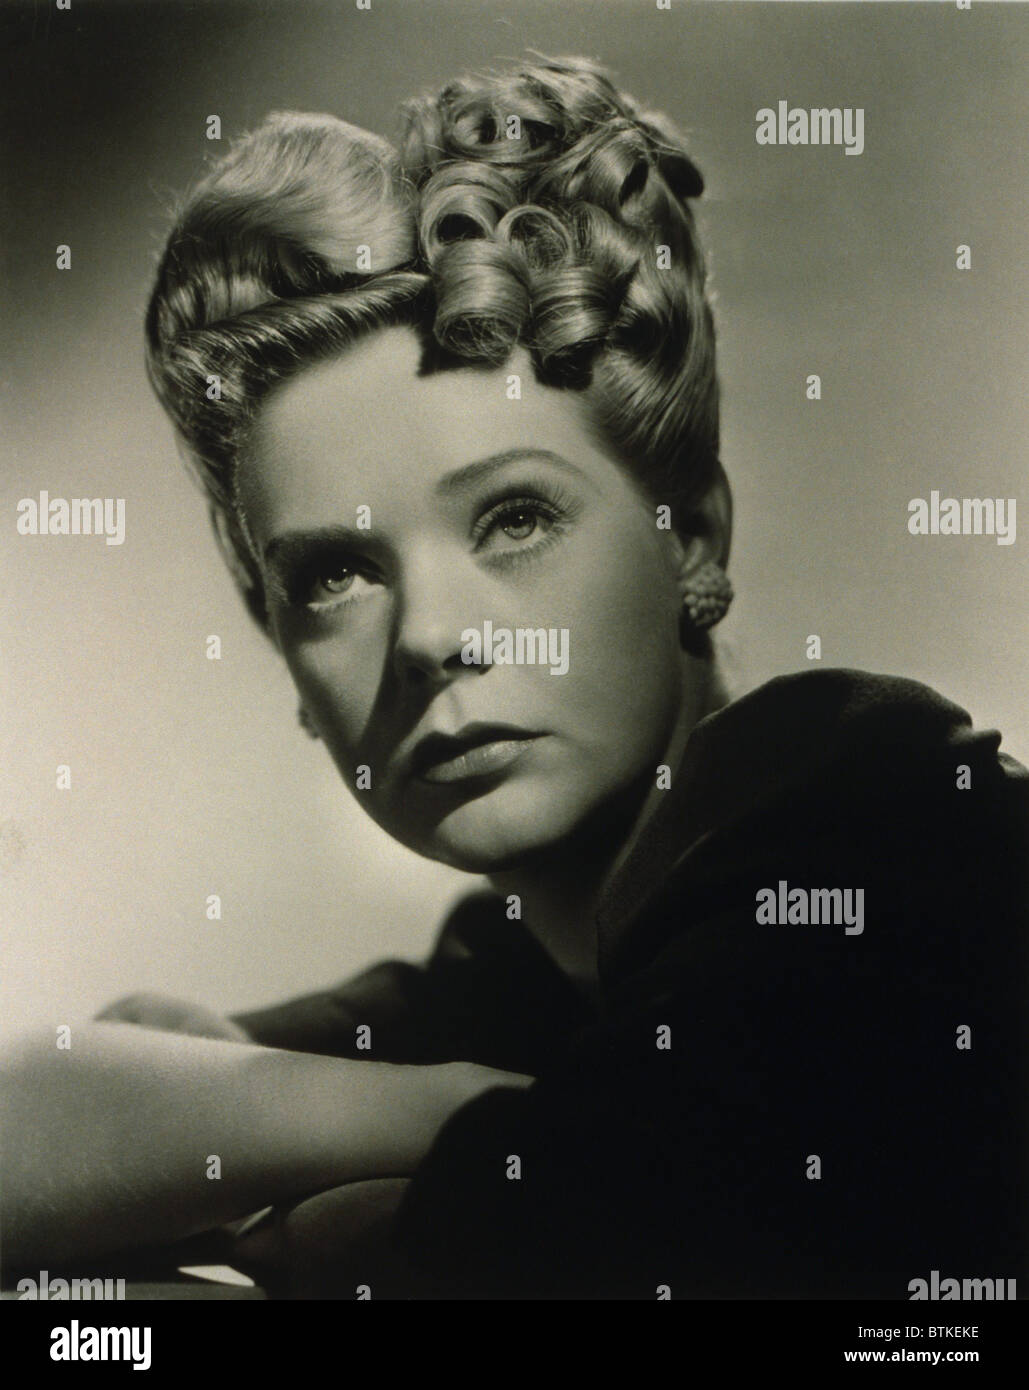 Alice Faye (1915-1998), actrice et chanteuse américaine dans la coiffure qu'elle portait dans le film 1943, le gang est là. Banque D'Images